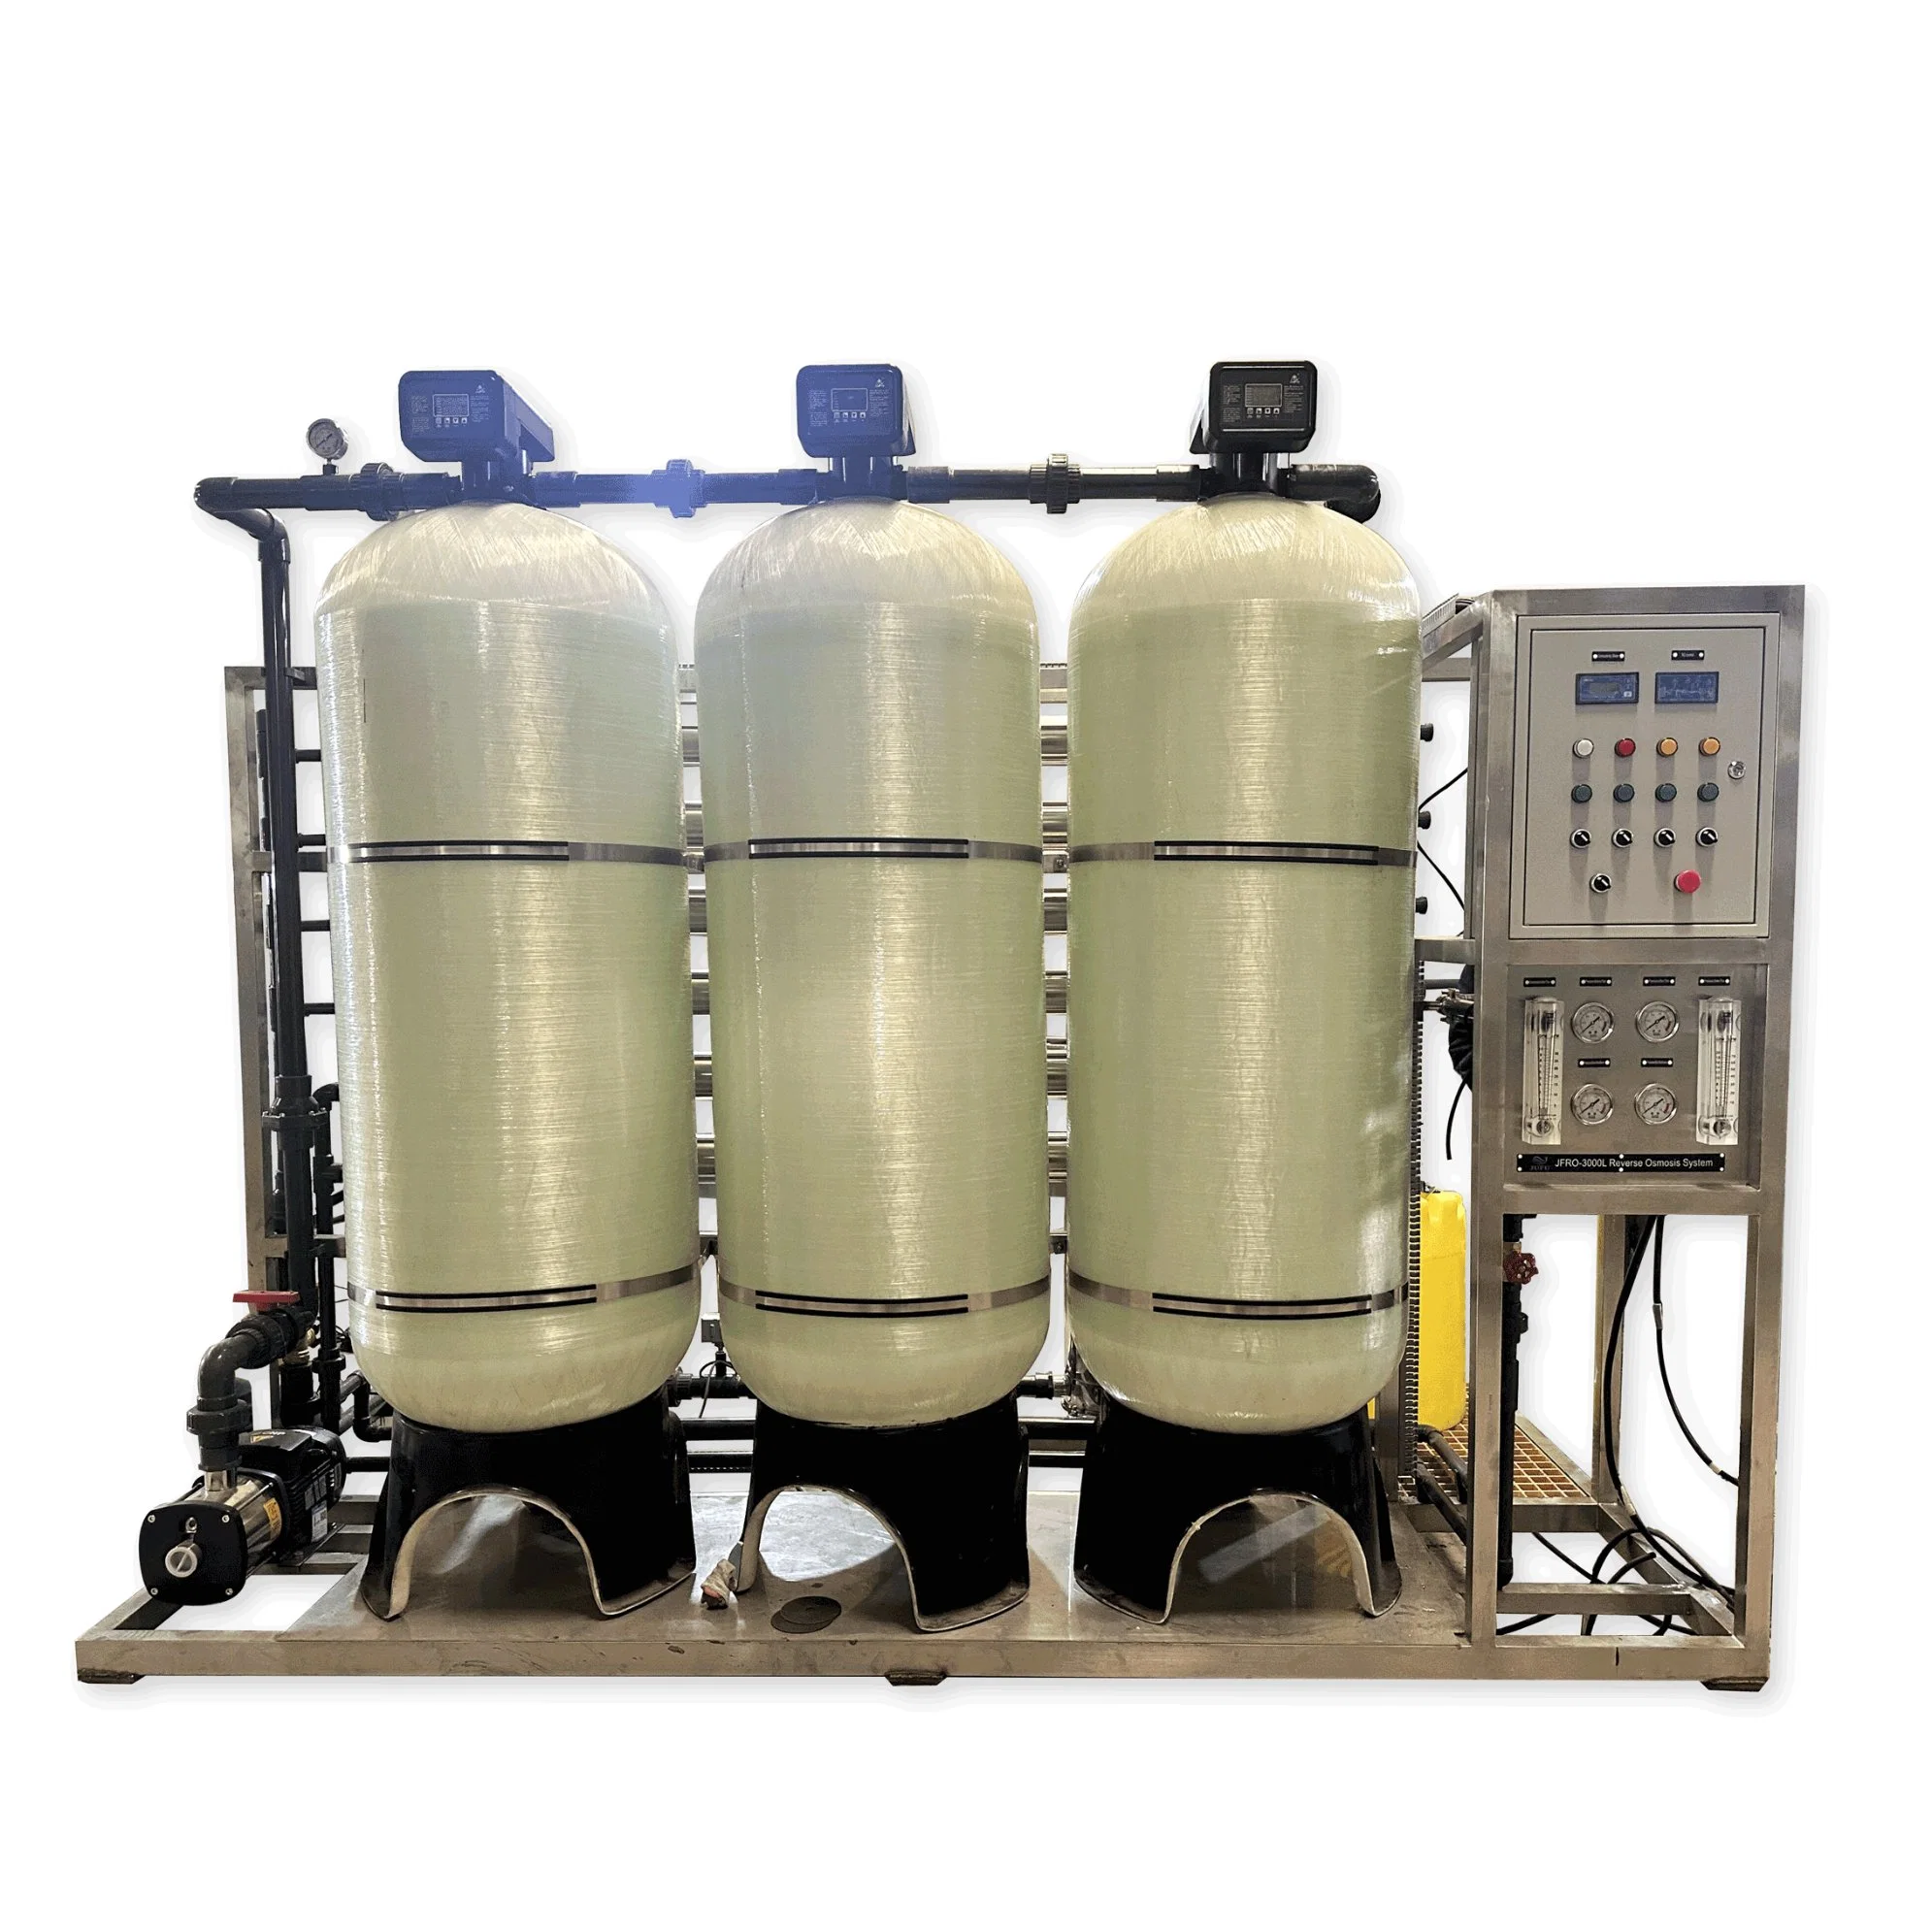 Equipo de tratamiento de agua Sistema de purificación de agua Filtro de ósmosis inversa Sistema de tratamiento de agua